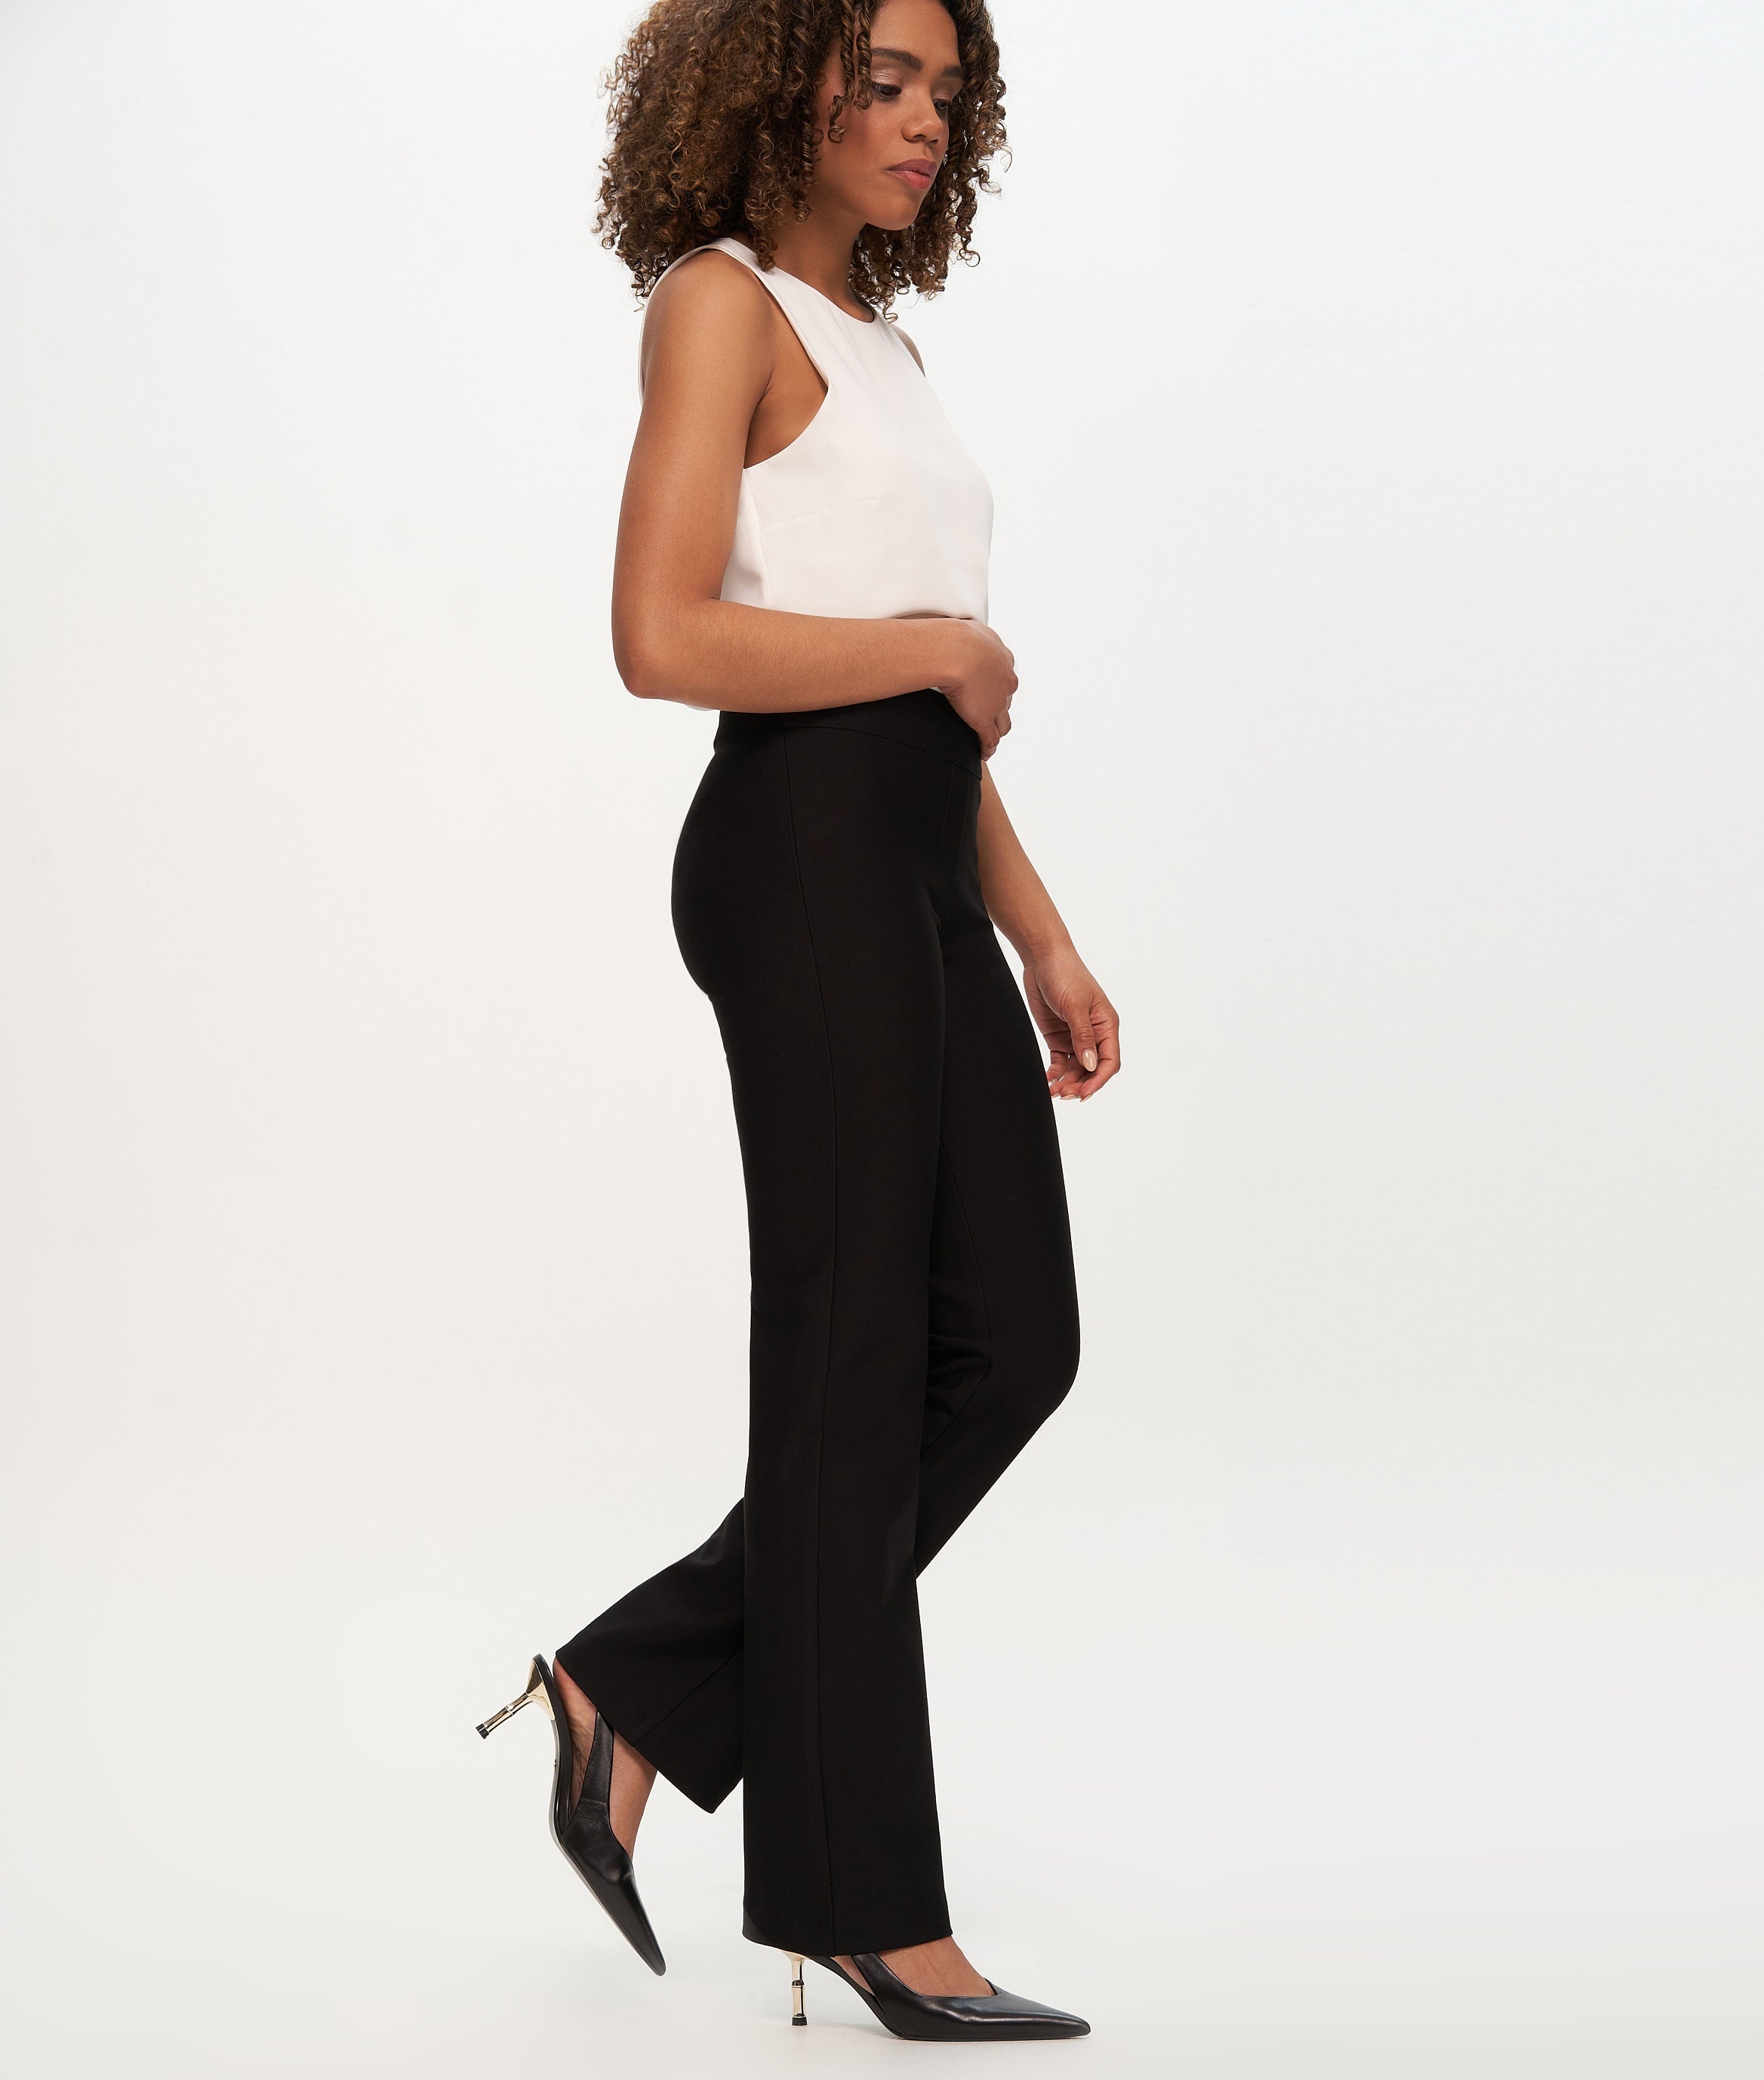 Shop Slim Fit Low Rise Solid Ponte Pants Online